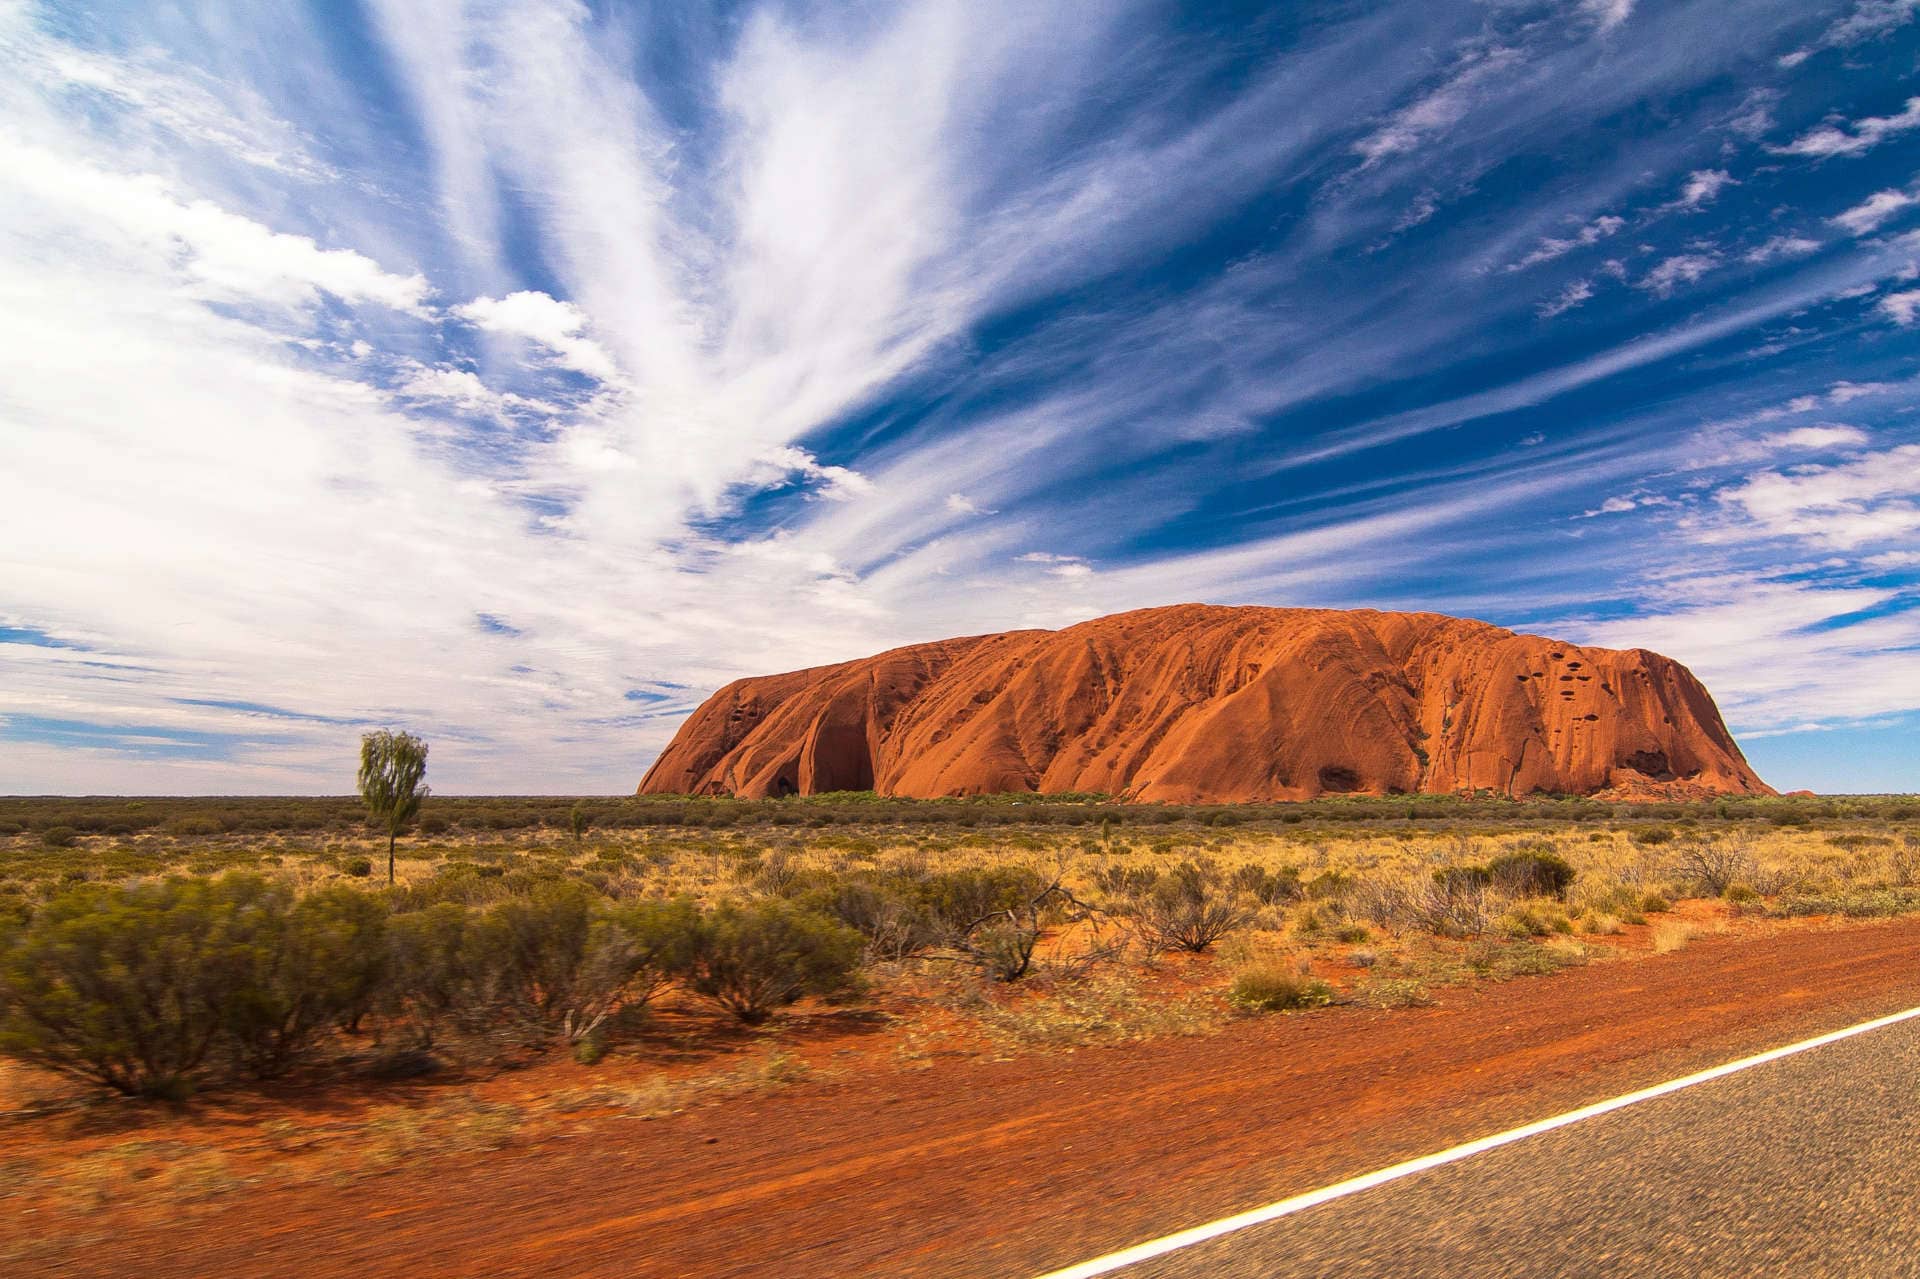 Ayer's Rock in Australia